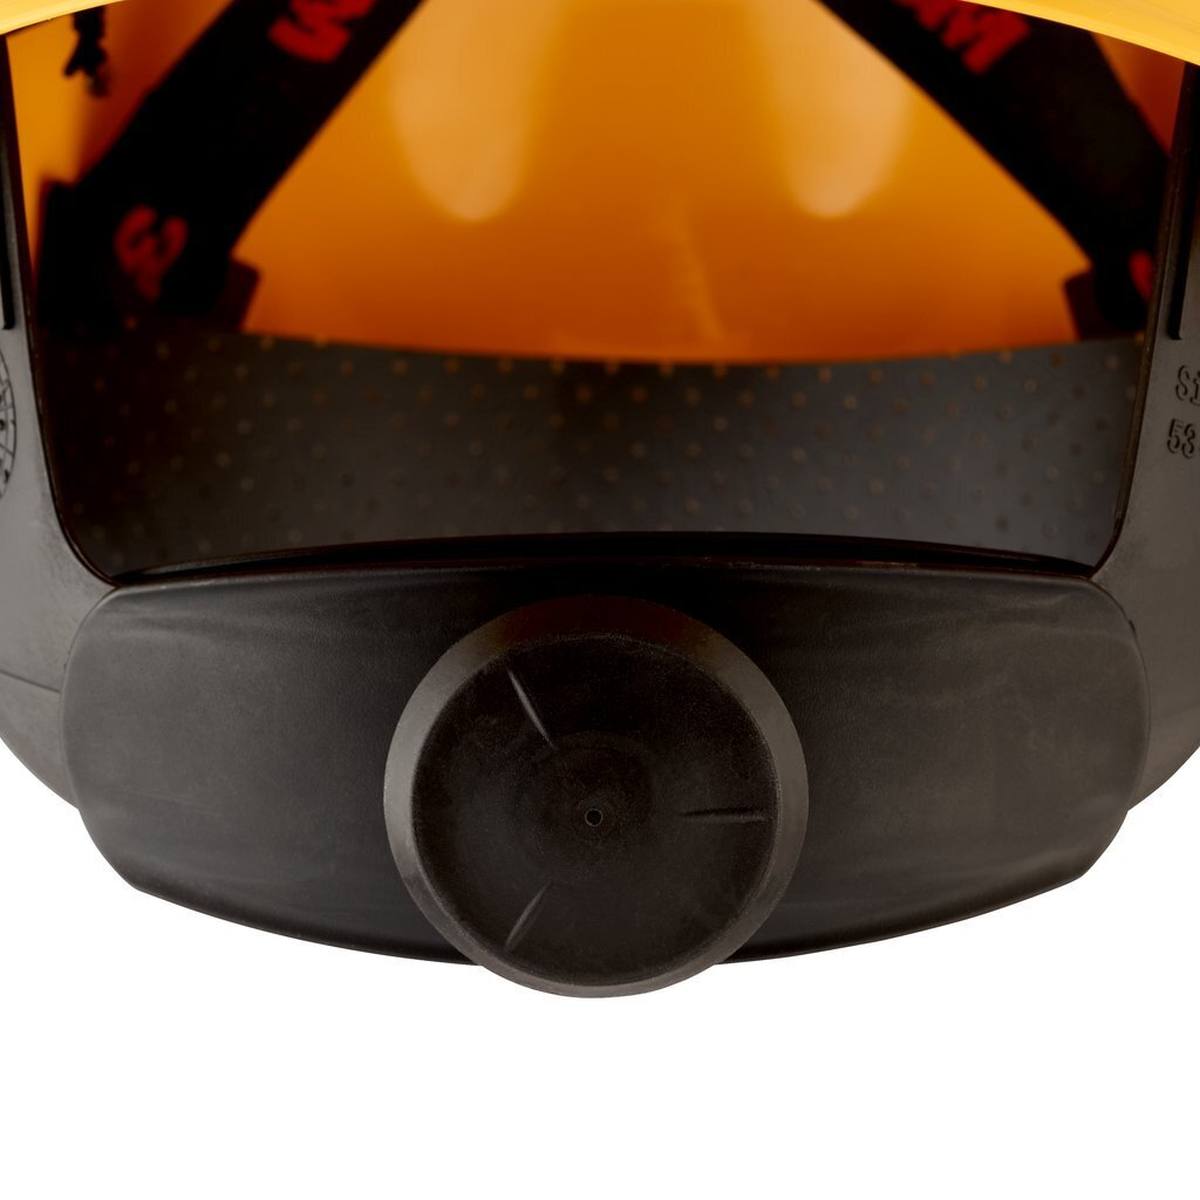 3M G3000 casque de protection G30NUY en jaune, ventilé, avec uvicator, cliquet et bande de soudure en plastique